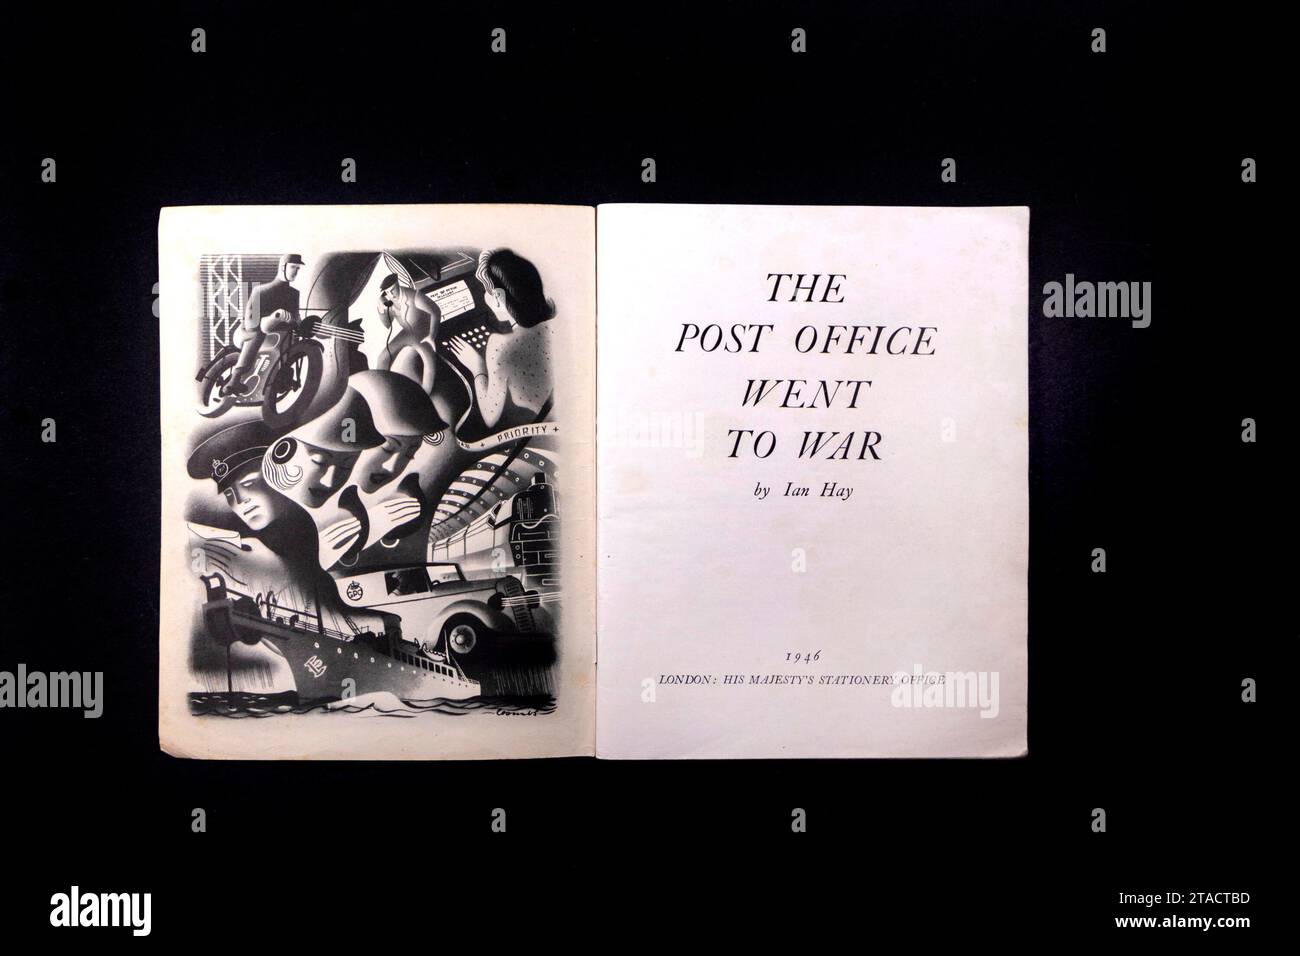 Le bureau de poste est allé à la guerre - livret vintage sur le rôle de GPO dans la guerre mondiale 2 Banque D'Images